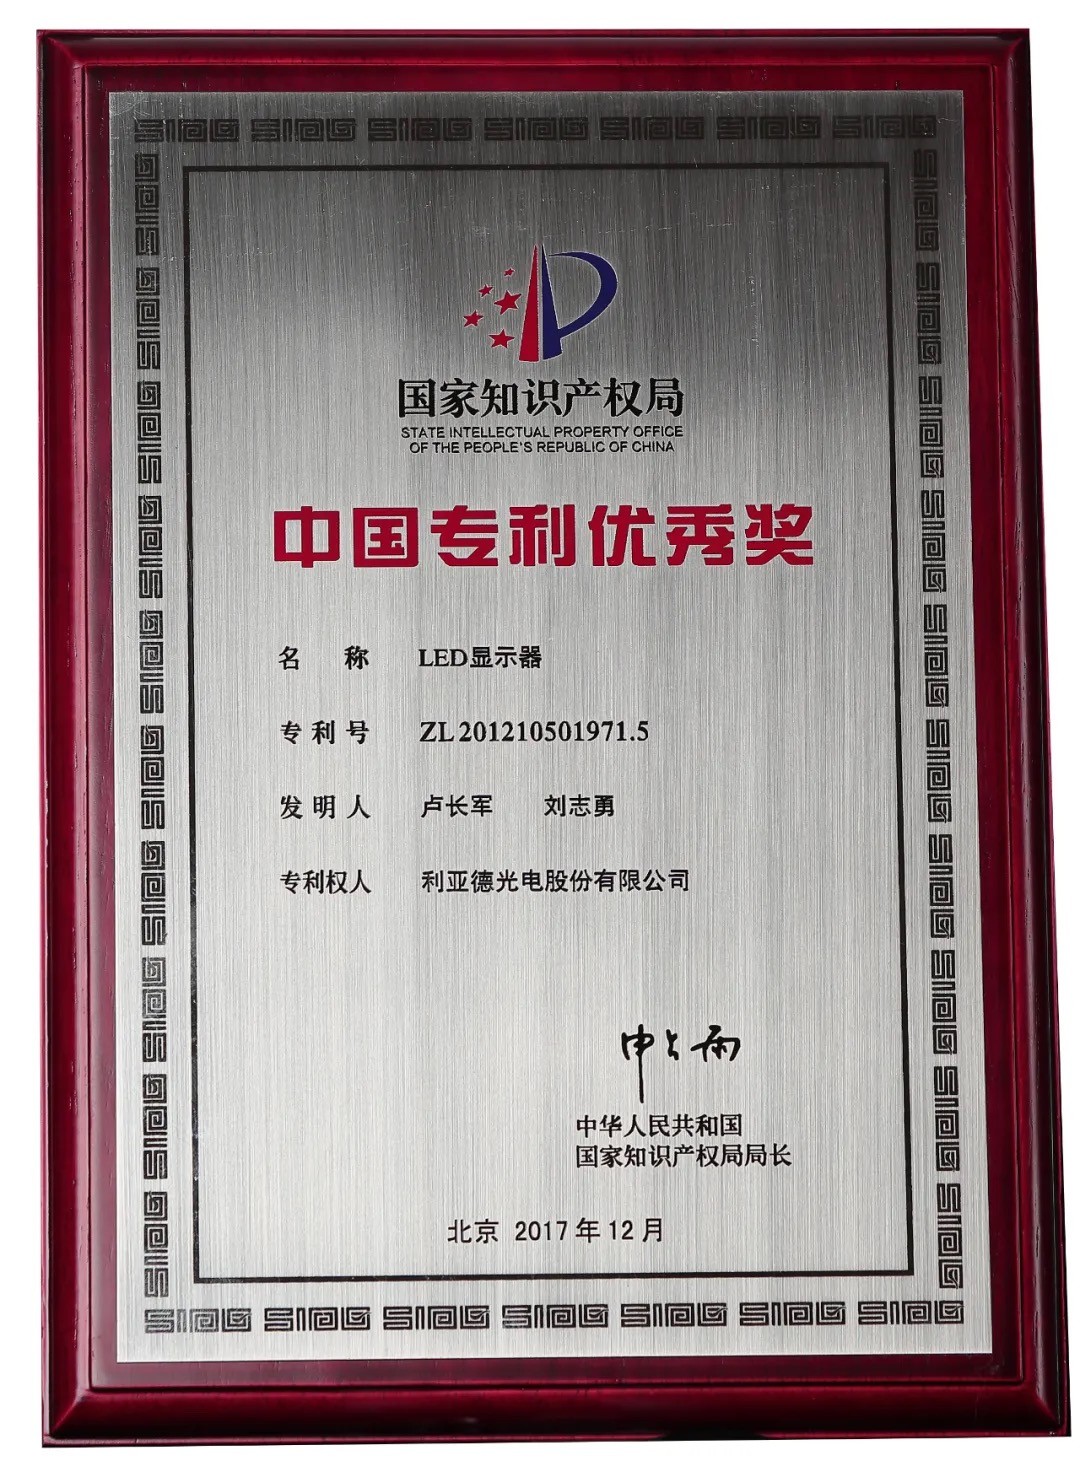 2021年5月27日第二十二届中国专利奖评审结果揭晓，利亚德荣获“中国专利优秀奖”